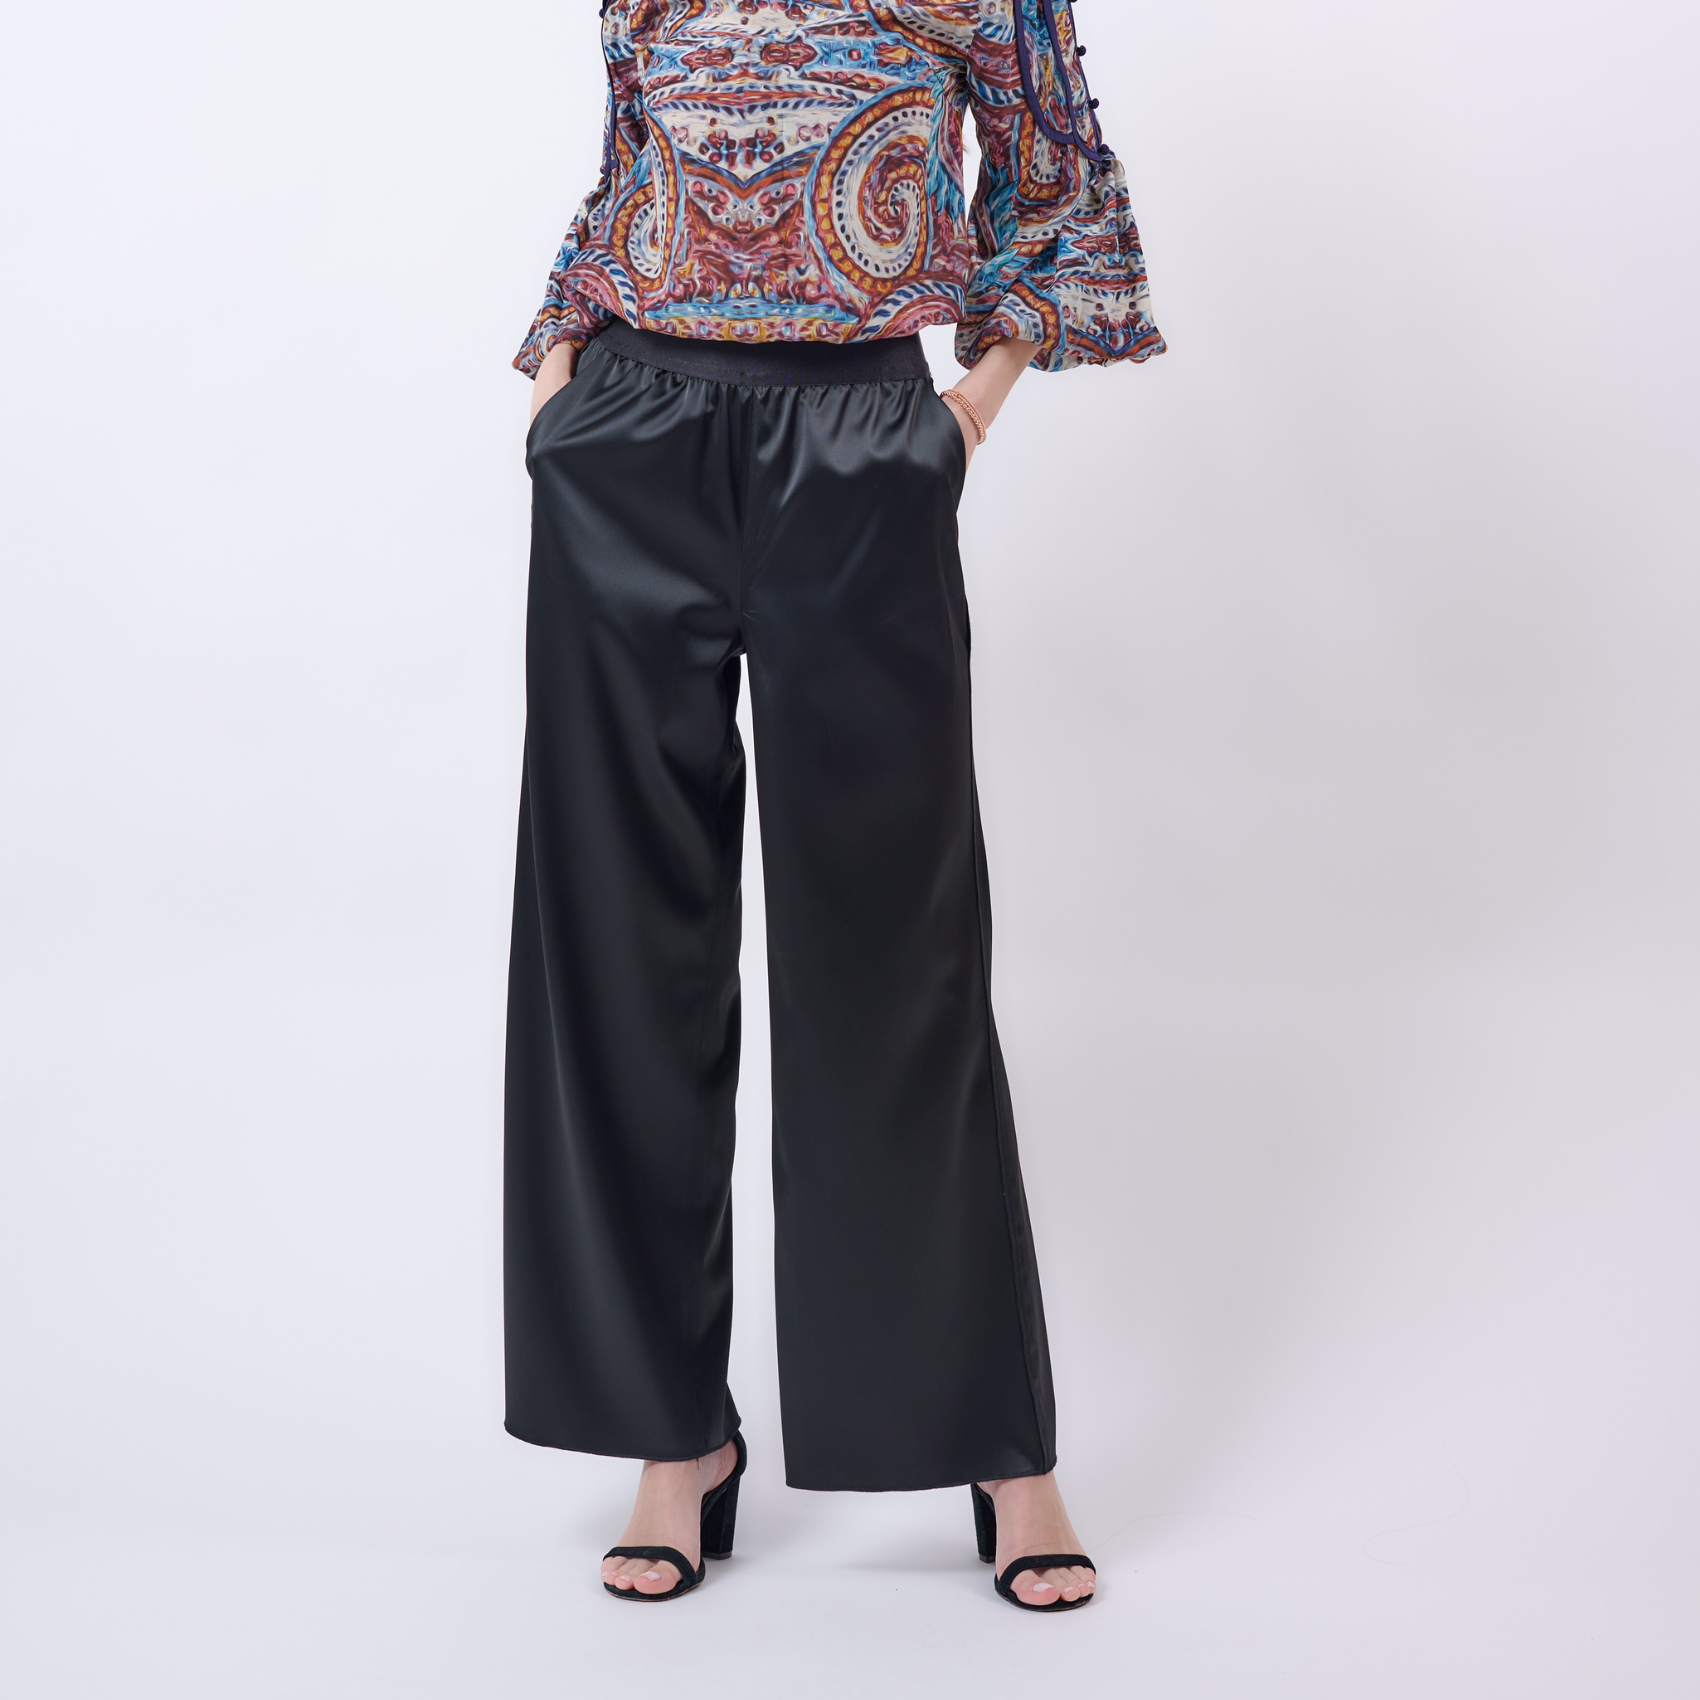 Luxurious ATHENA Silk Trousers by Gosia Orlowska